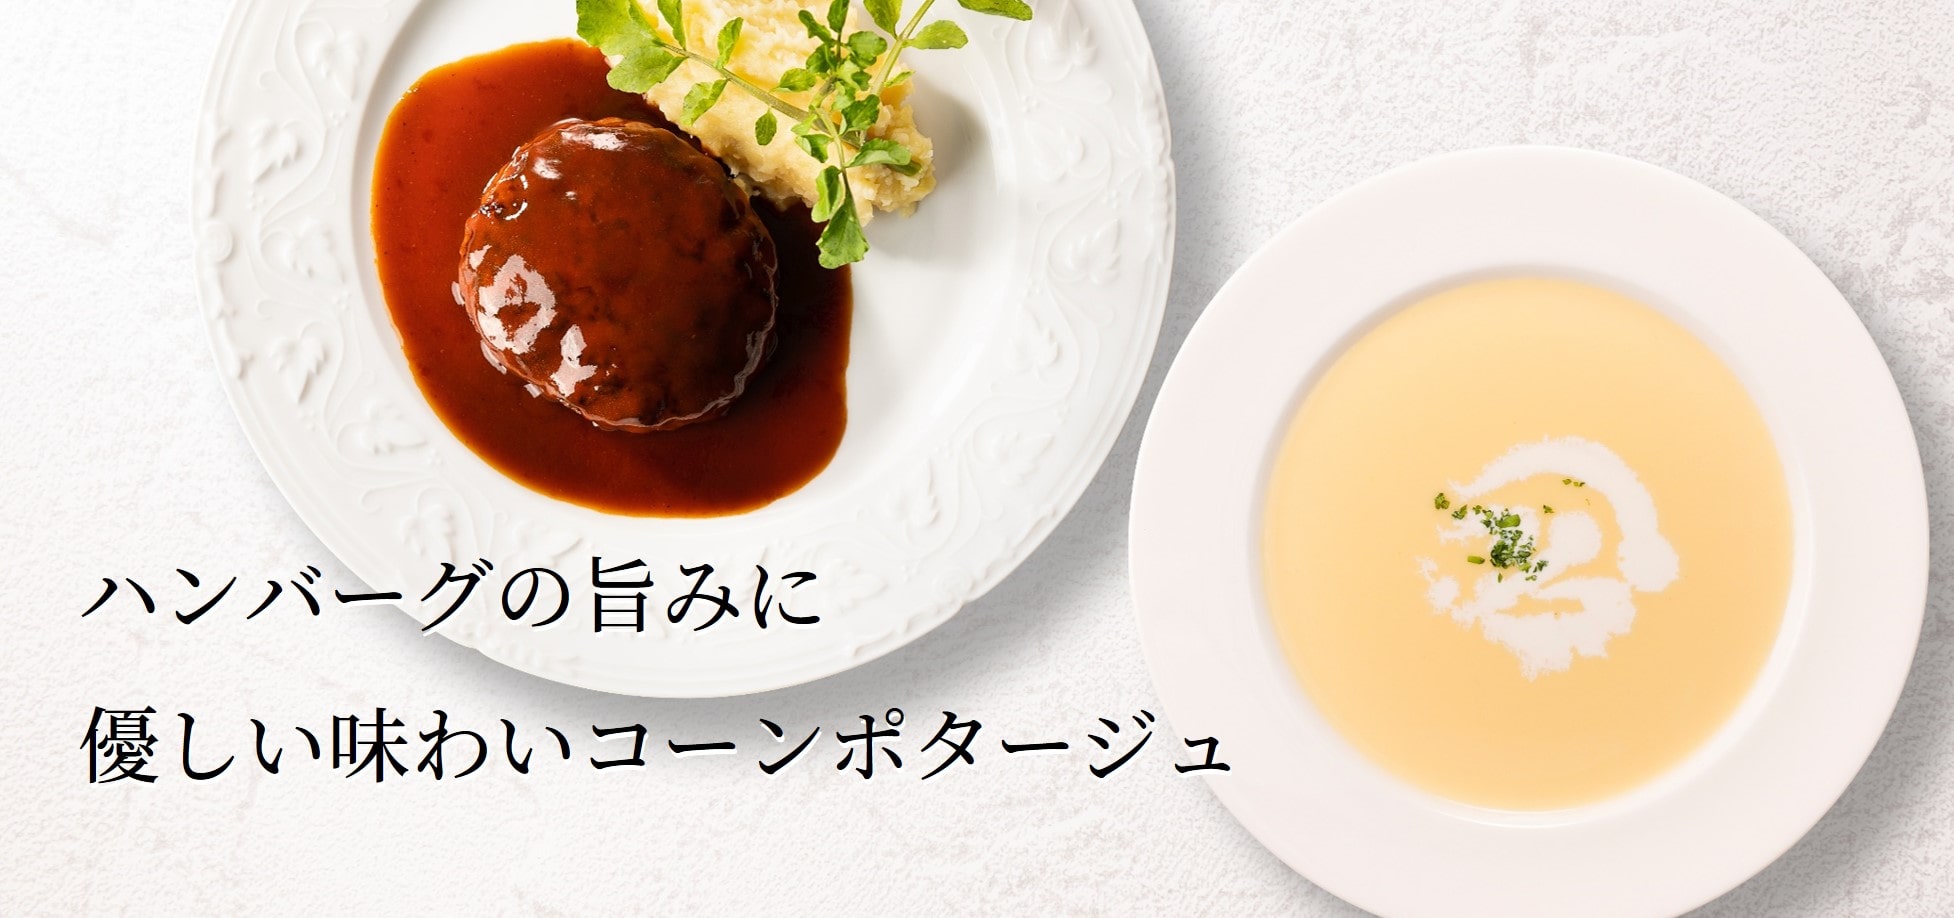 黒毛和牛と黒豚のハンバーグ〜洋食ドミグラスソース〜＆コーンポタージュ